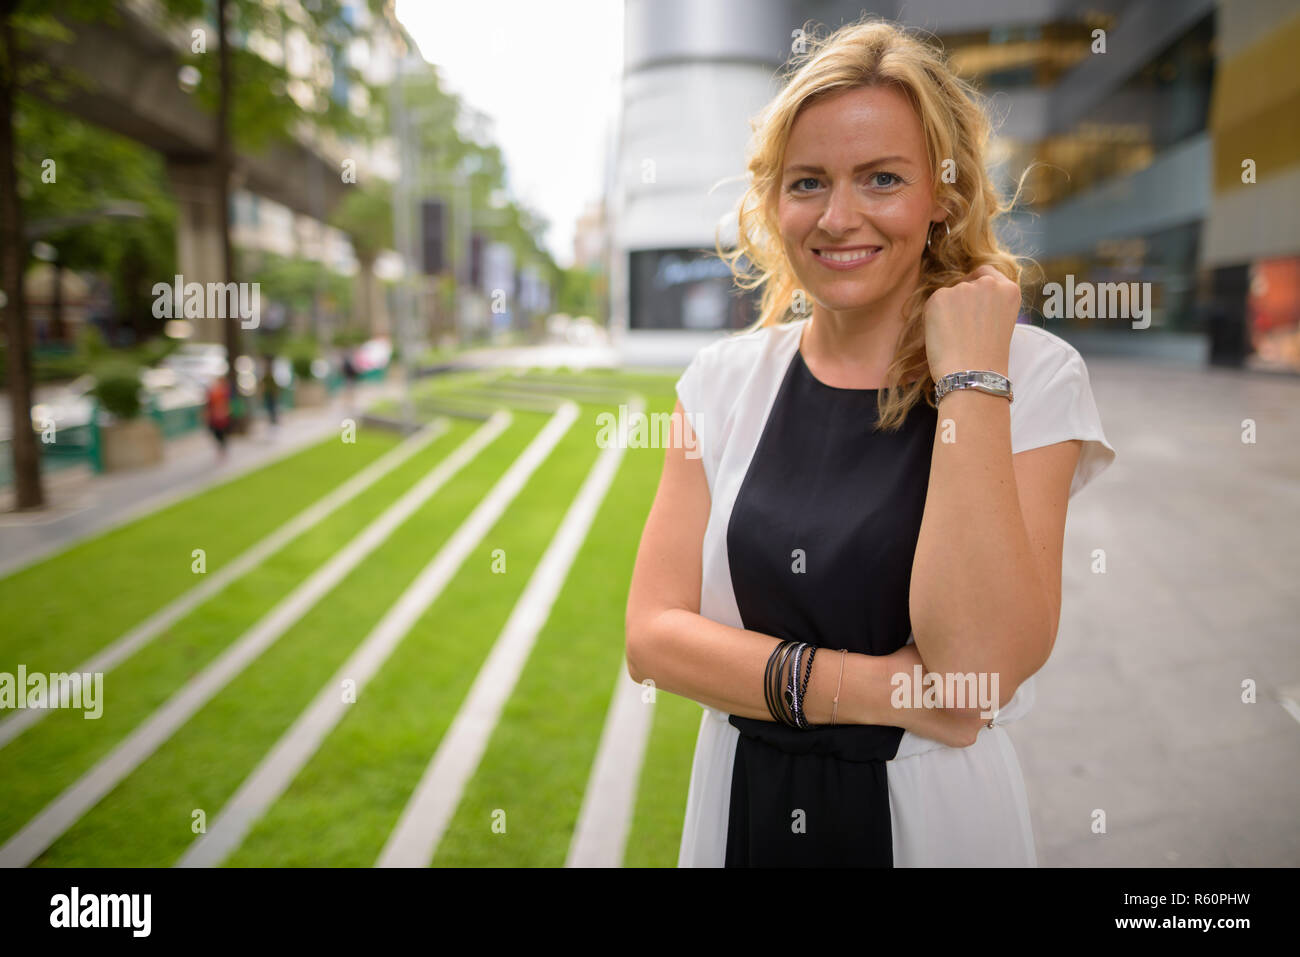 Portrait de belle blonde woman smiling outdoors Banque D'Images